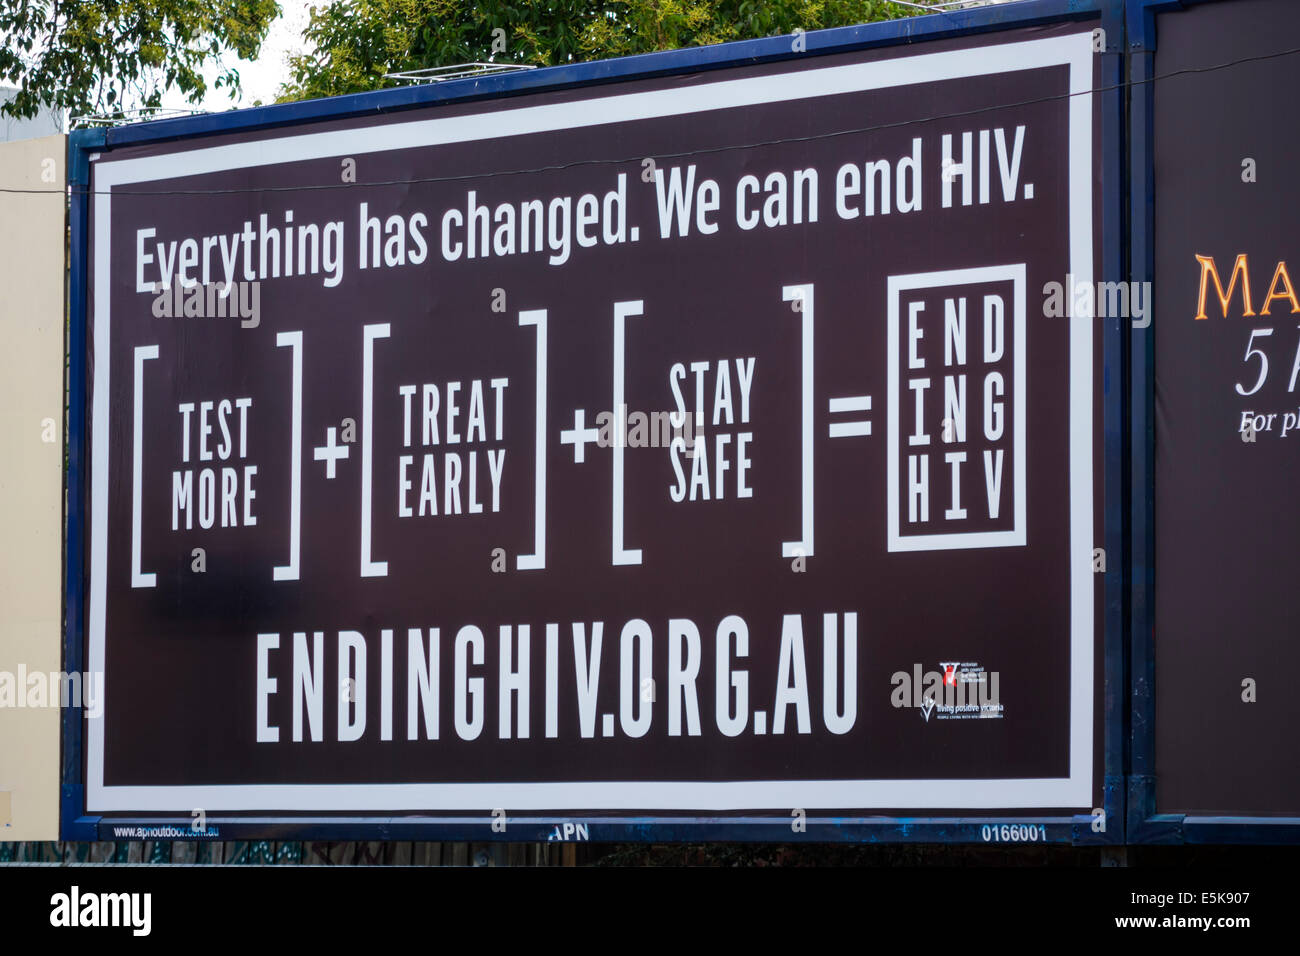 Melbourne Australien, Plakatwand, HIV, AIDS, Aufklärung, Tests, Sensibilisierung, AU140322080 Stockfoto